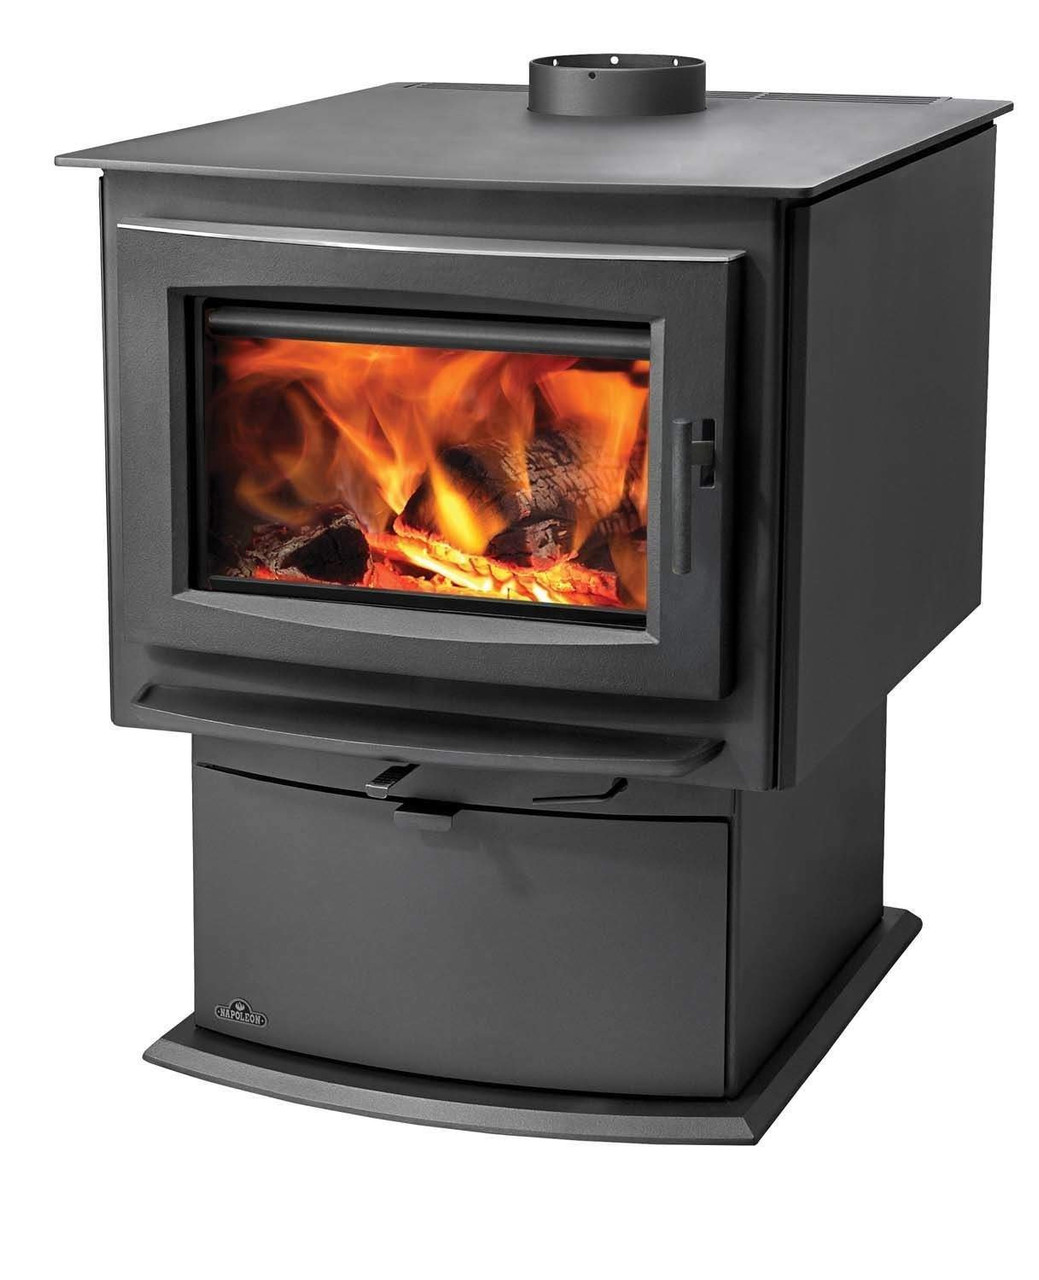 cast iron stove  Wood burning stove, Wood stove decor, Wood stove fireplace